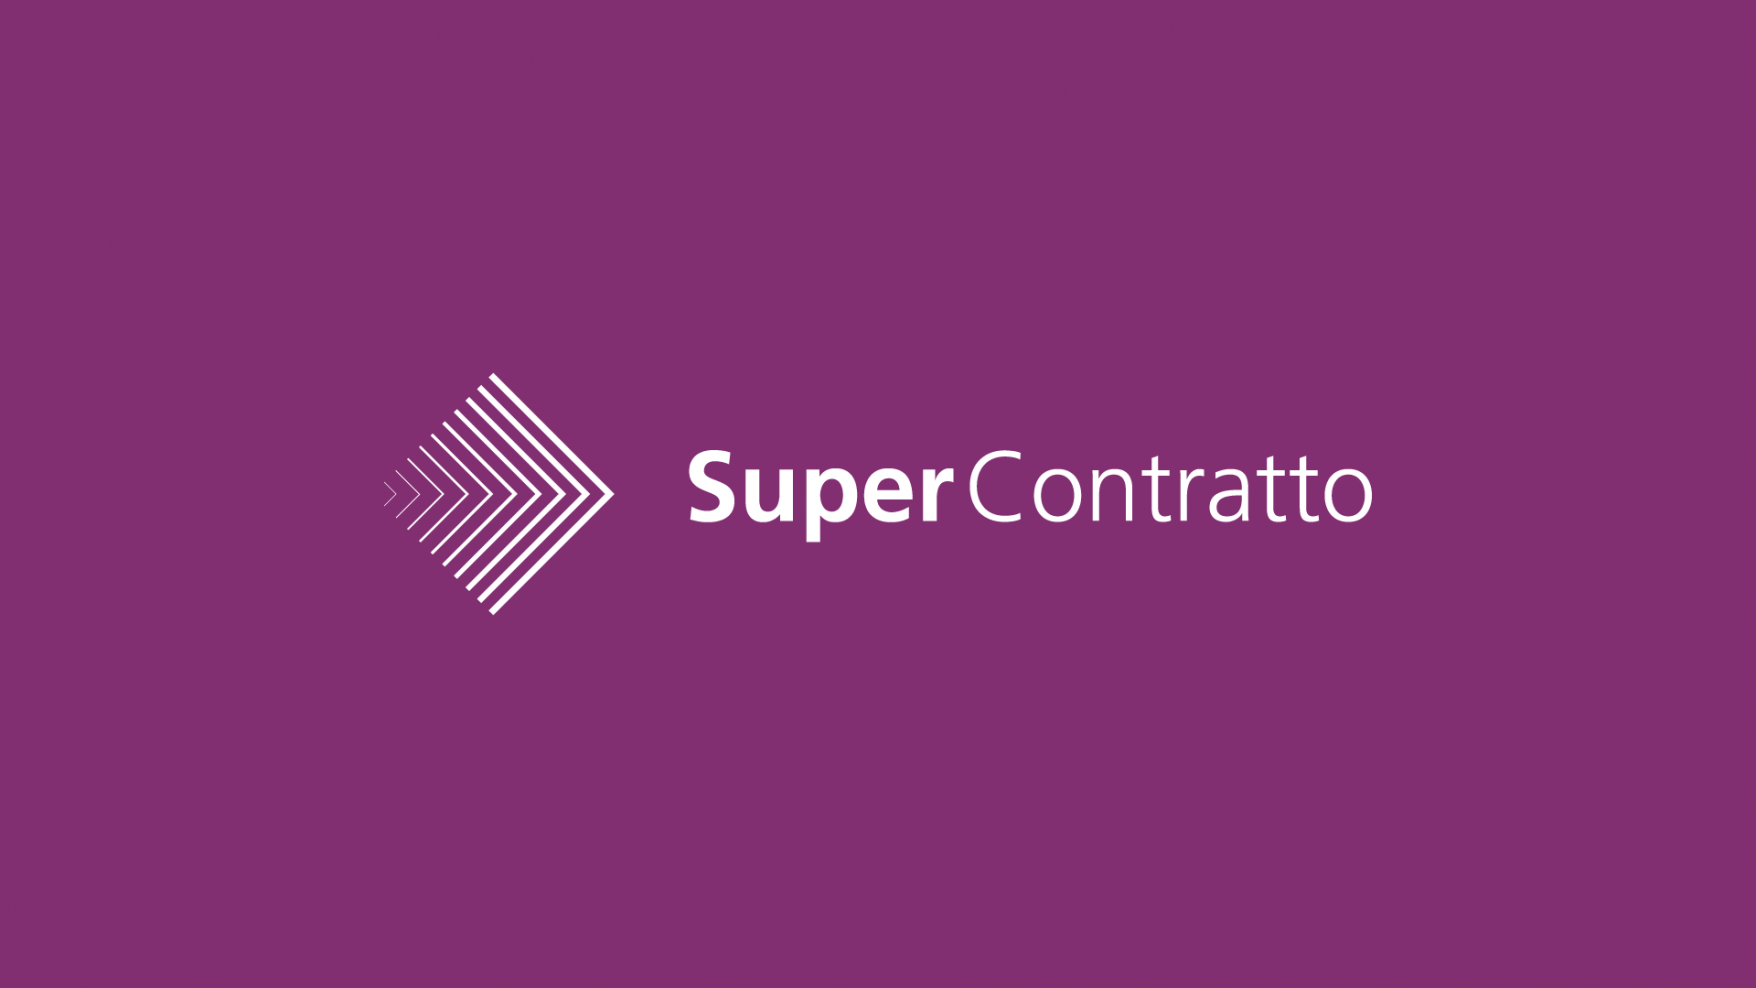 Super Contratto logo